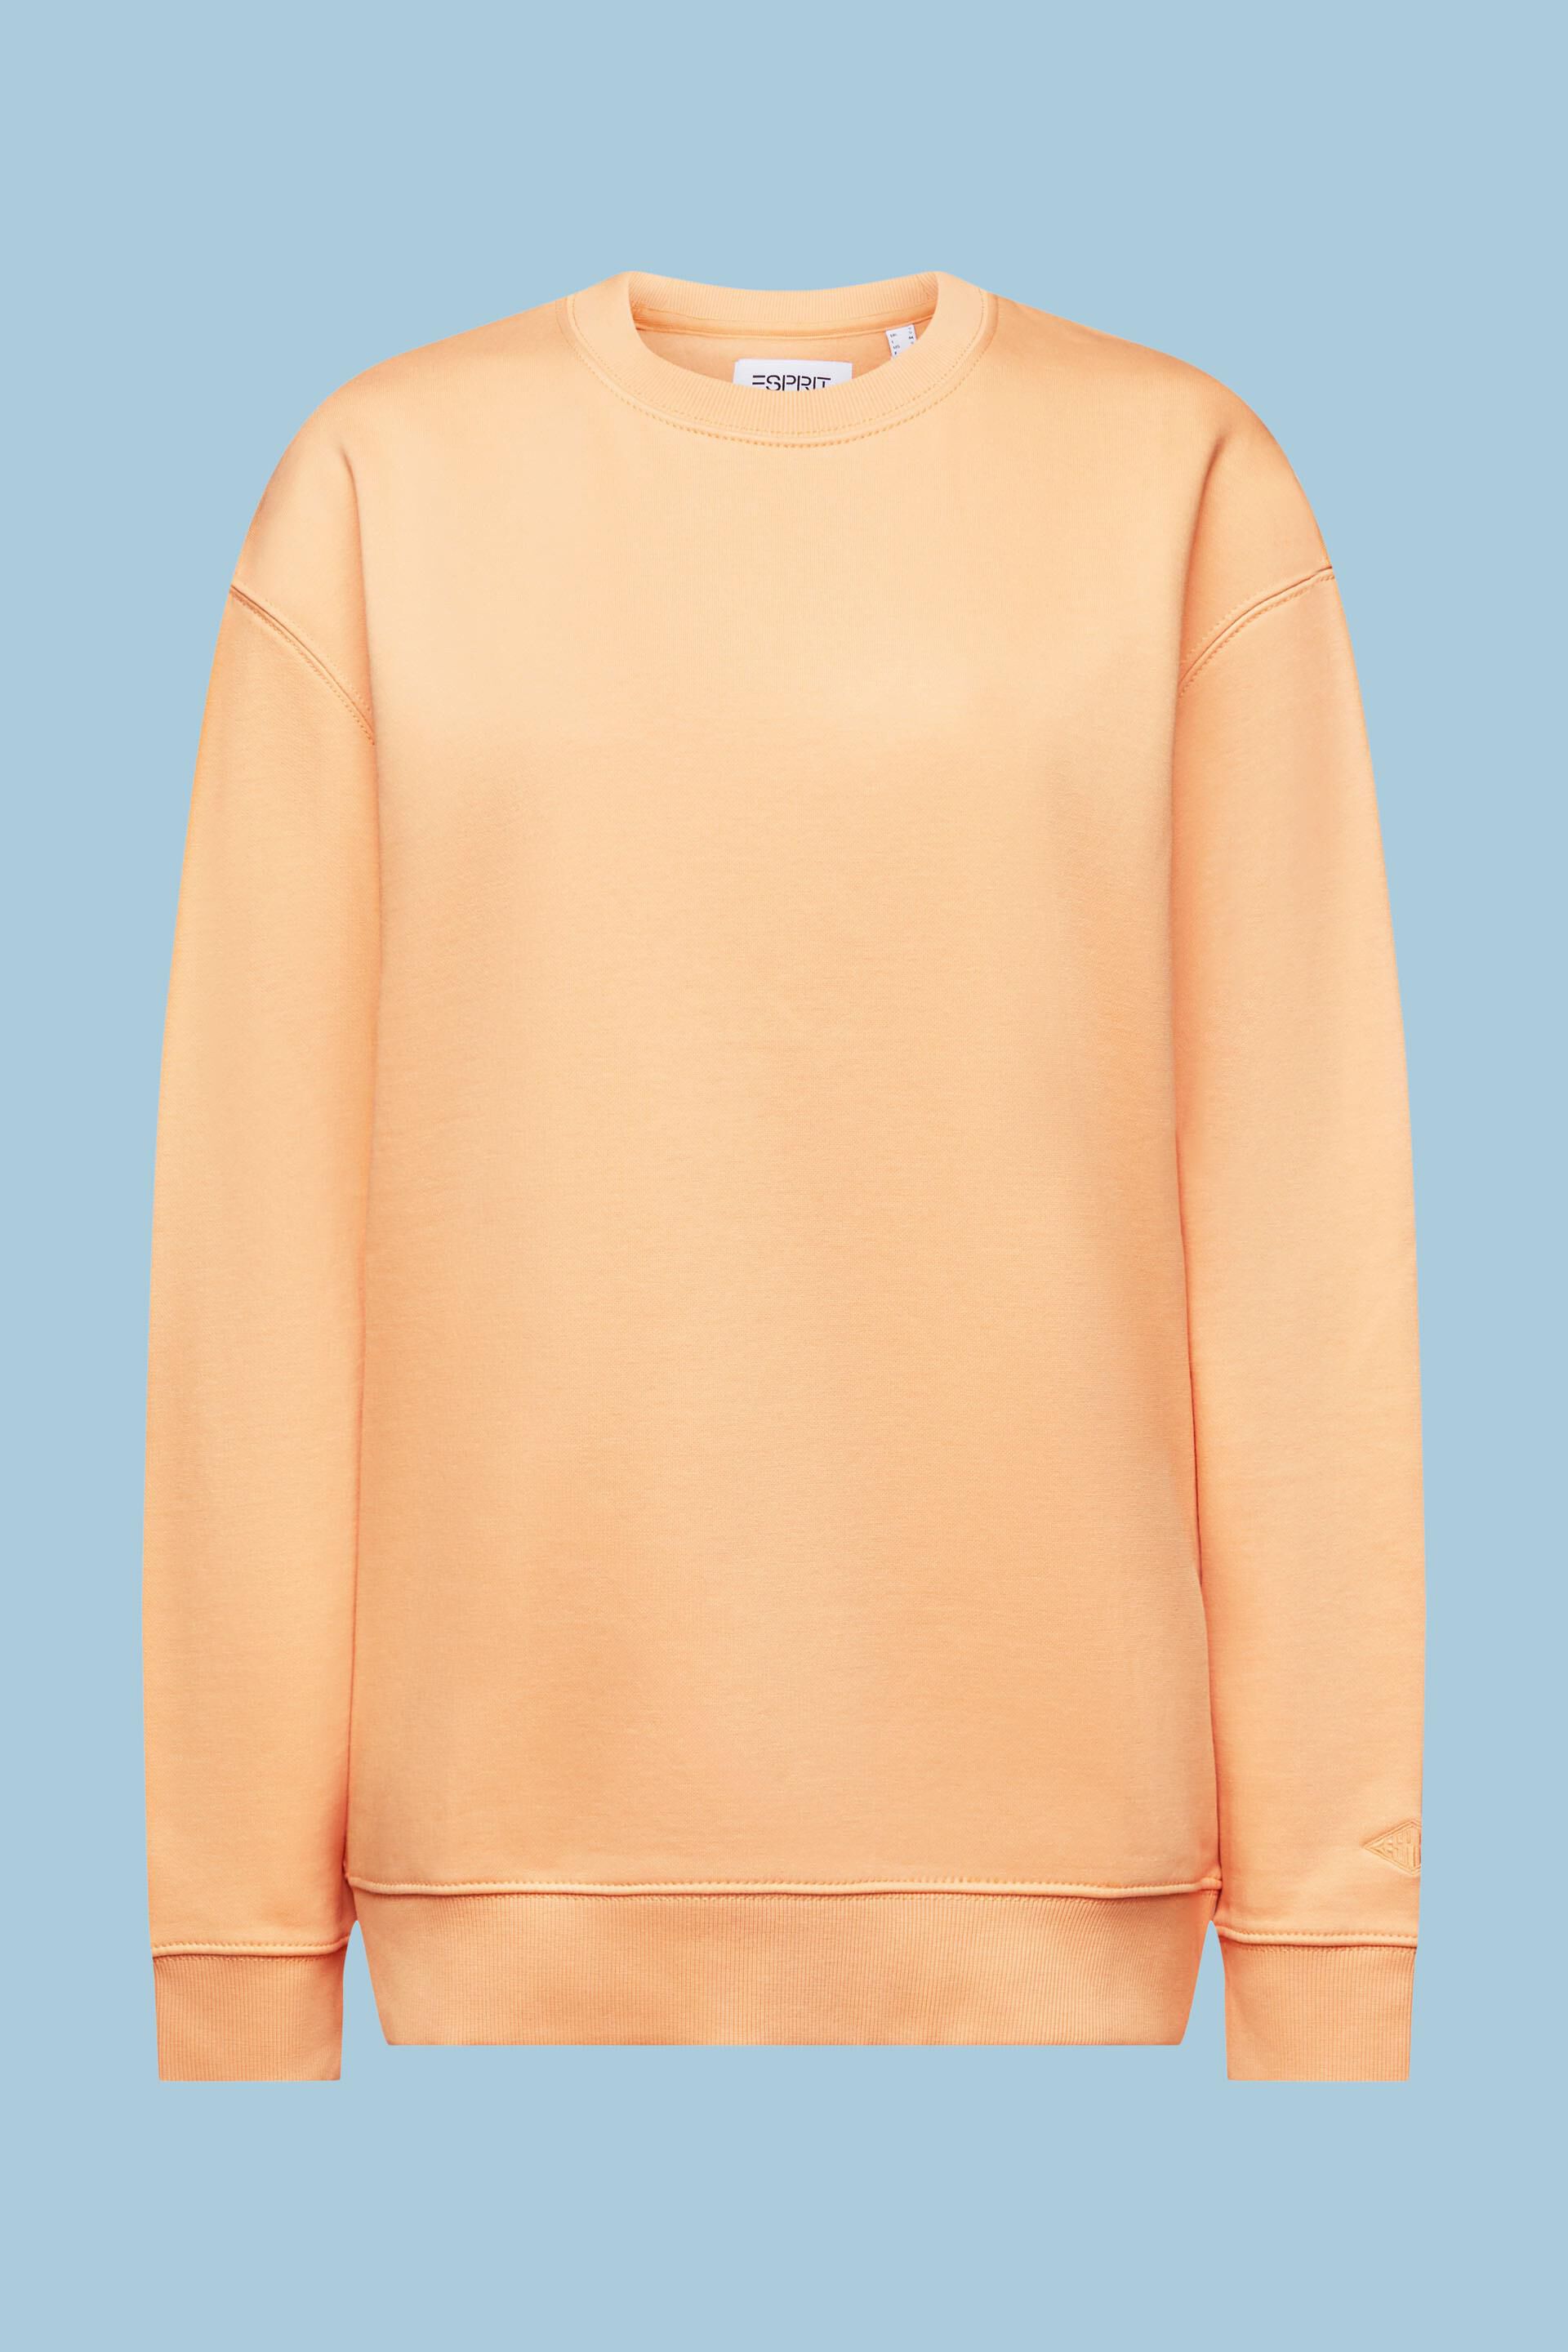 Cotton Blend Pullover Sweatshirt at shop online ESPRIT our 